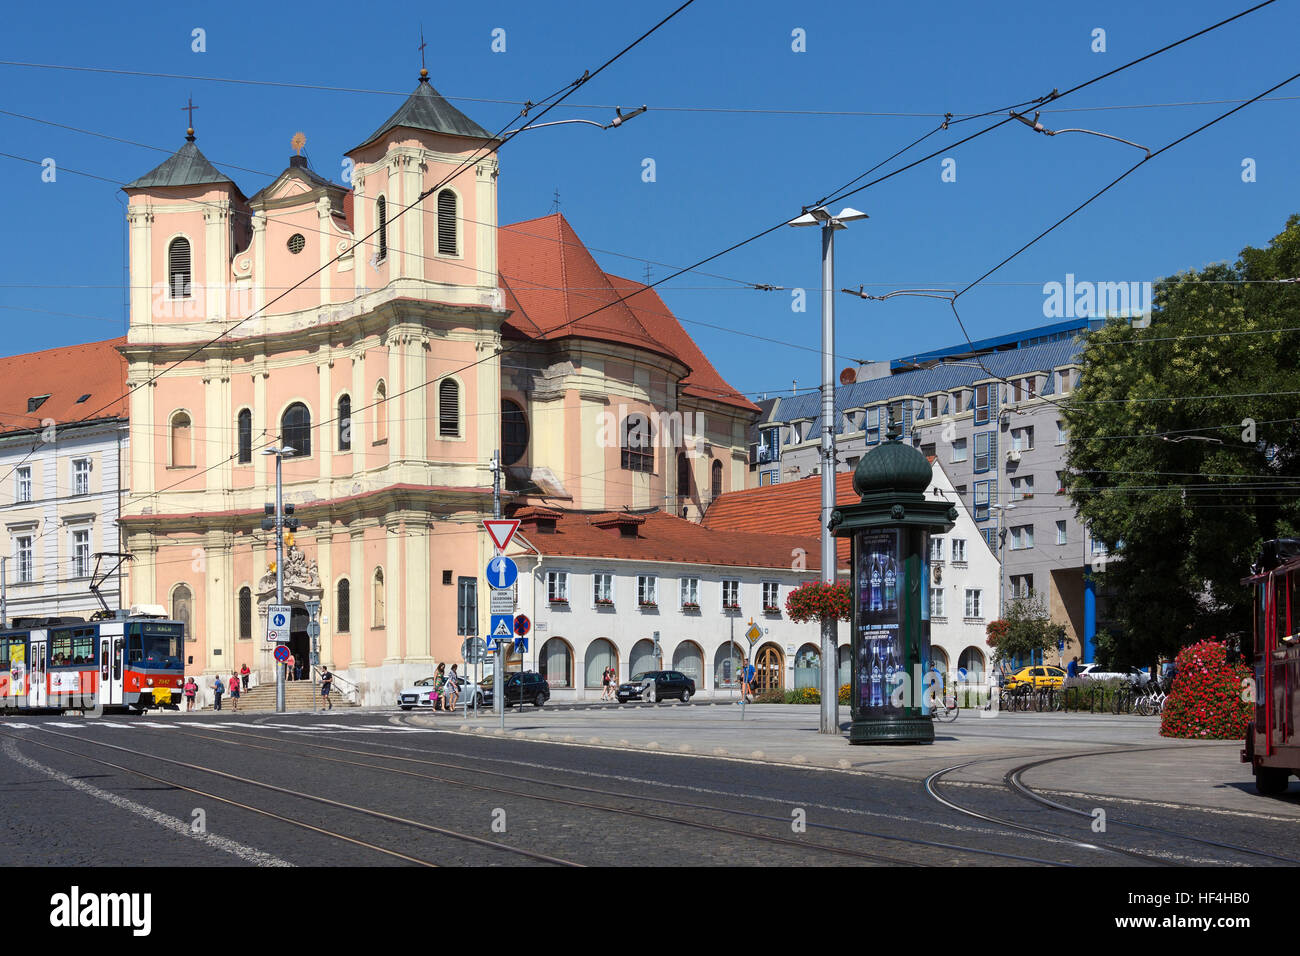 Straßenszene von der trinitarischen Kirche in der Stadt Bratislava, die Hauptstadt der Slowakei in Osteuropa. Stockfoto